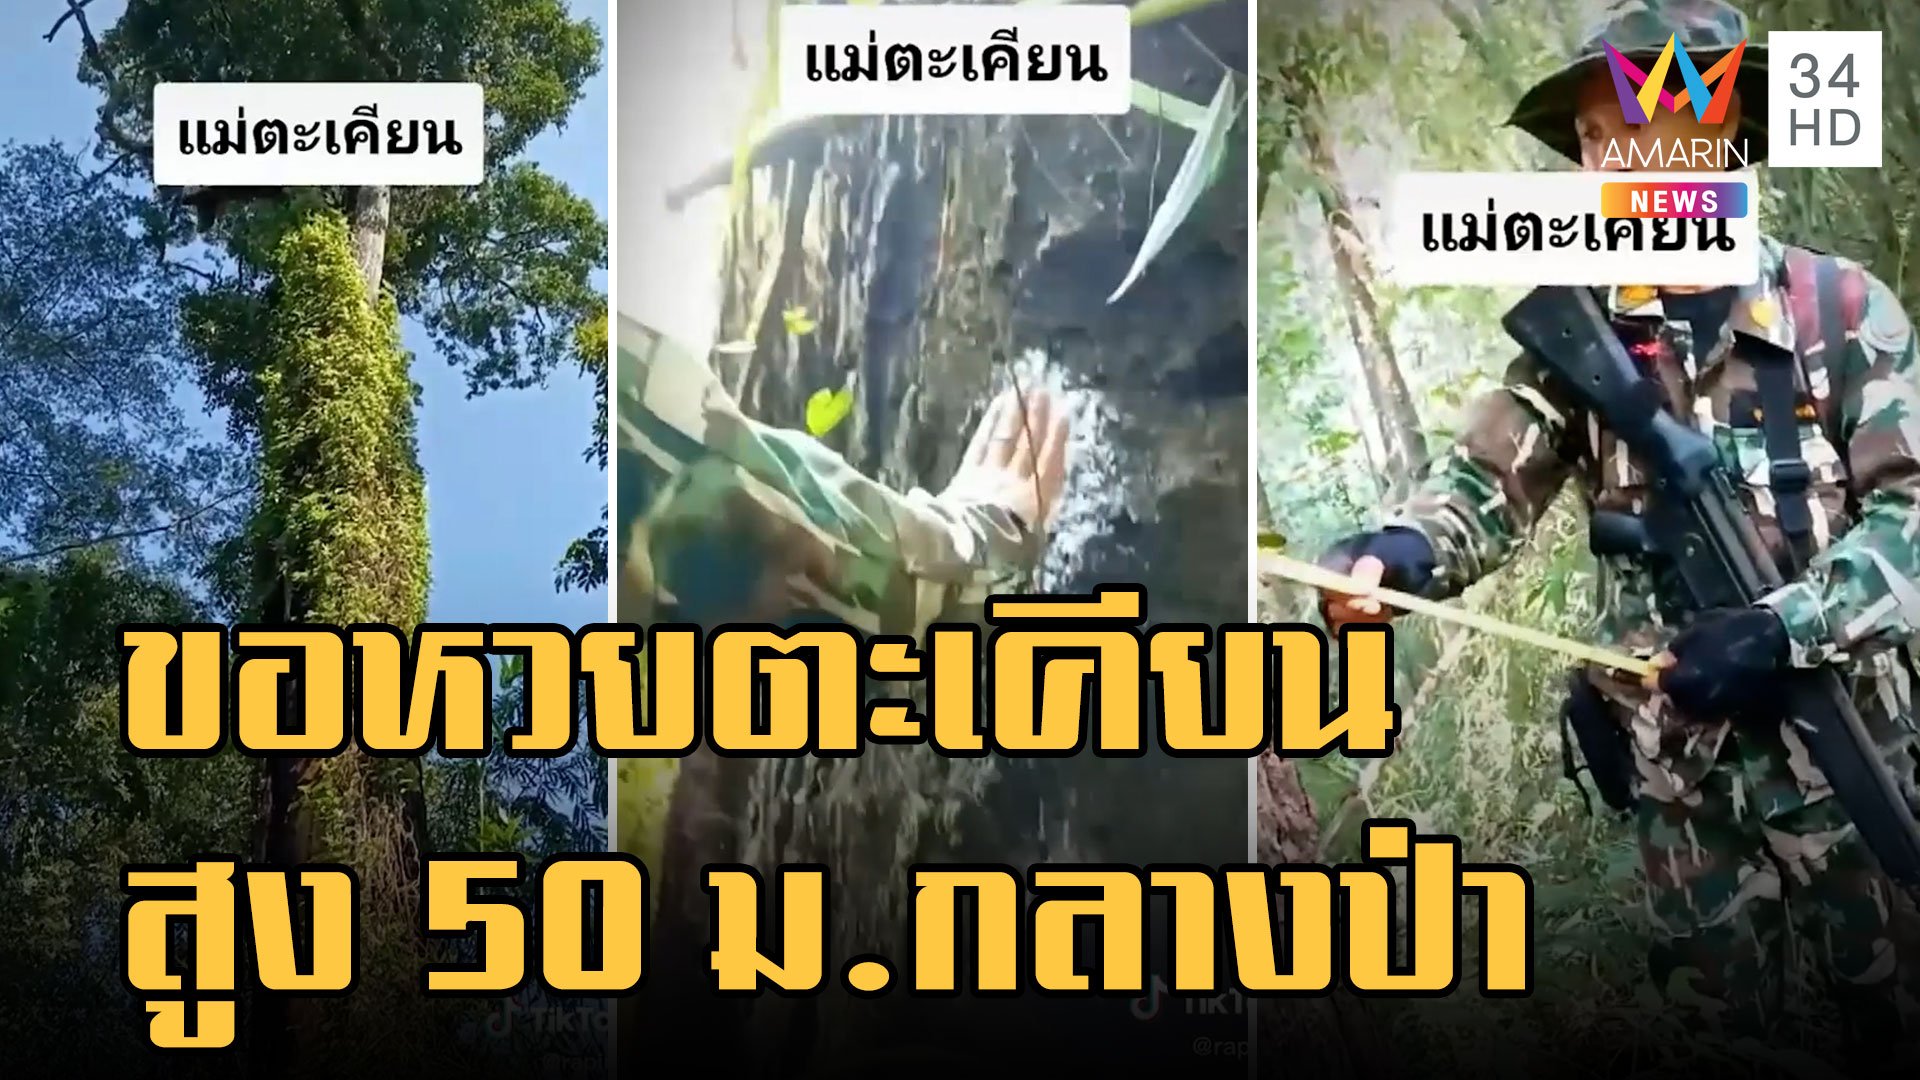 ต้นตะเคียนยักษ์สูง 50 เมตร เข้าป่าทาแป้งขอโชคลาภ | ข่าวอรุณอมรินทร์ | 27 ต.ค. 65 | AMARIN TVHD34